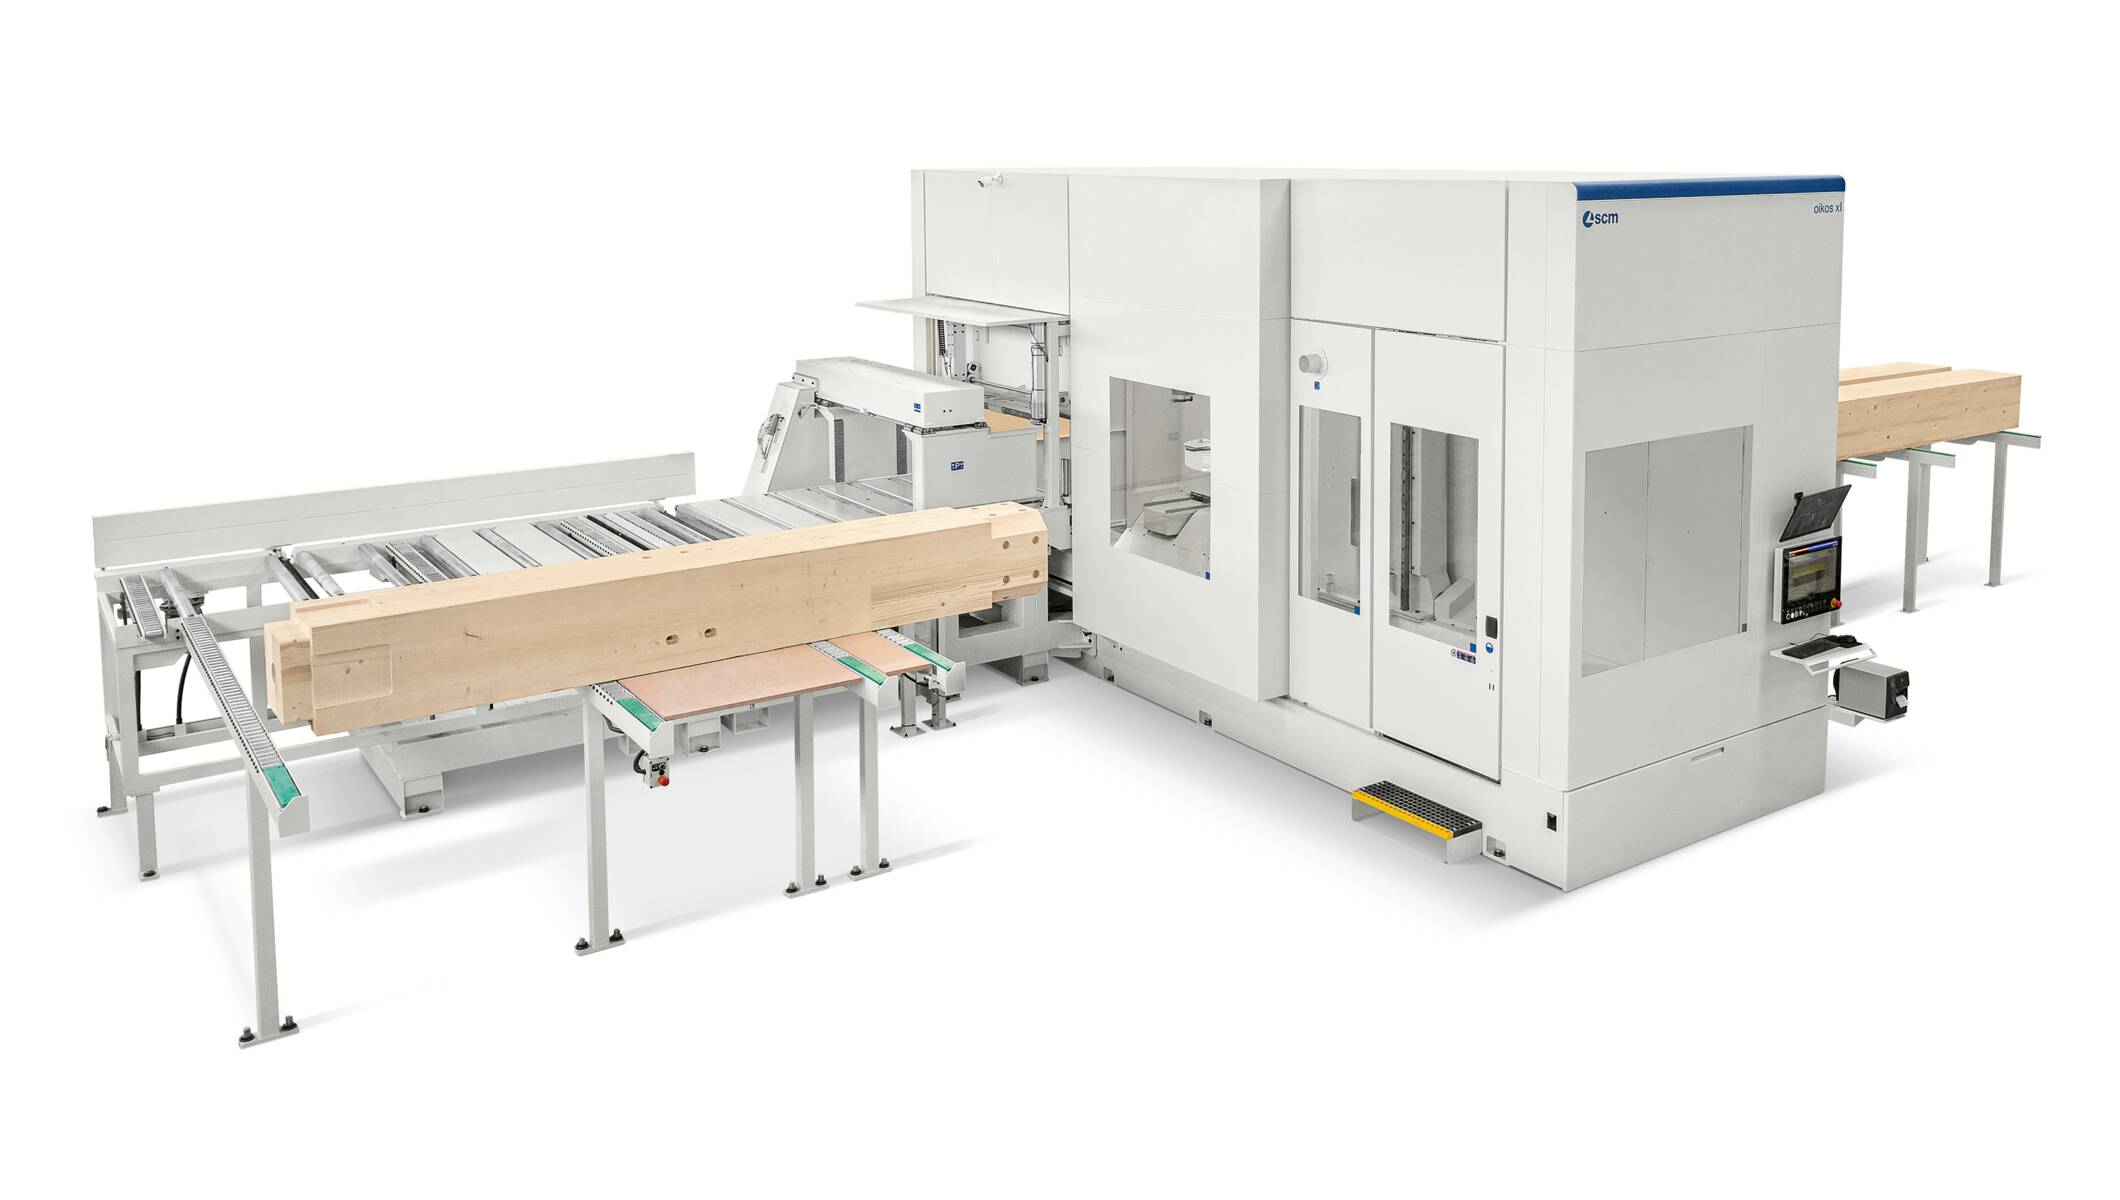 Systeme für den Holzbau - CNC-Abbundanlagen für den Holzbau - oikos xl